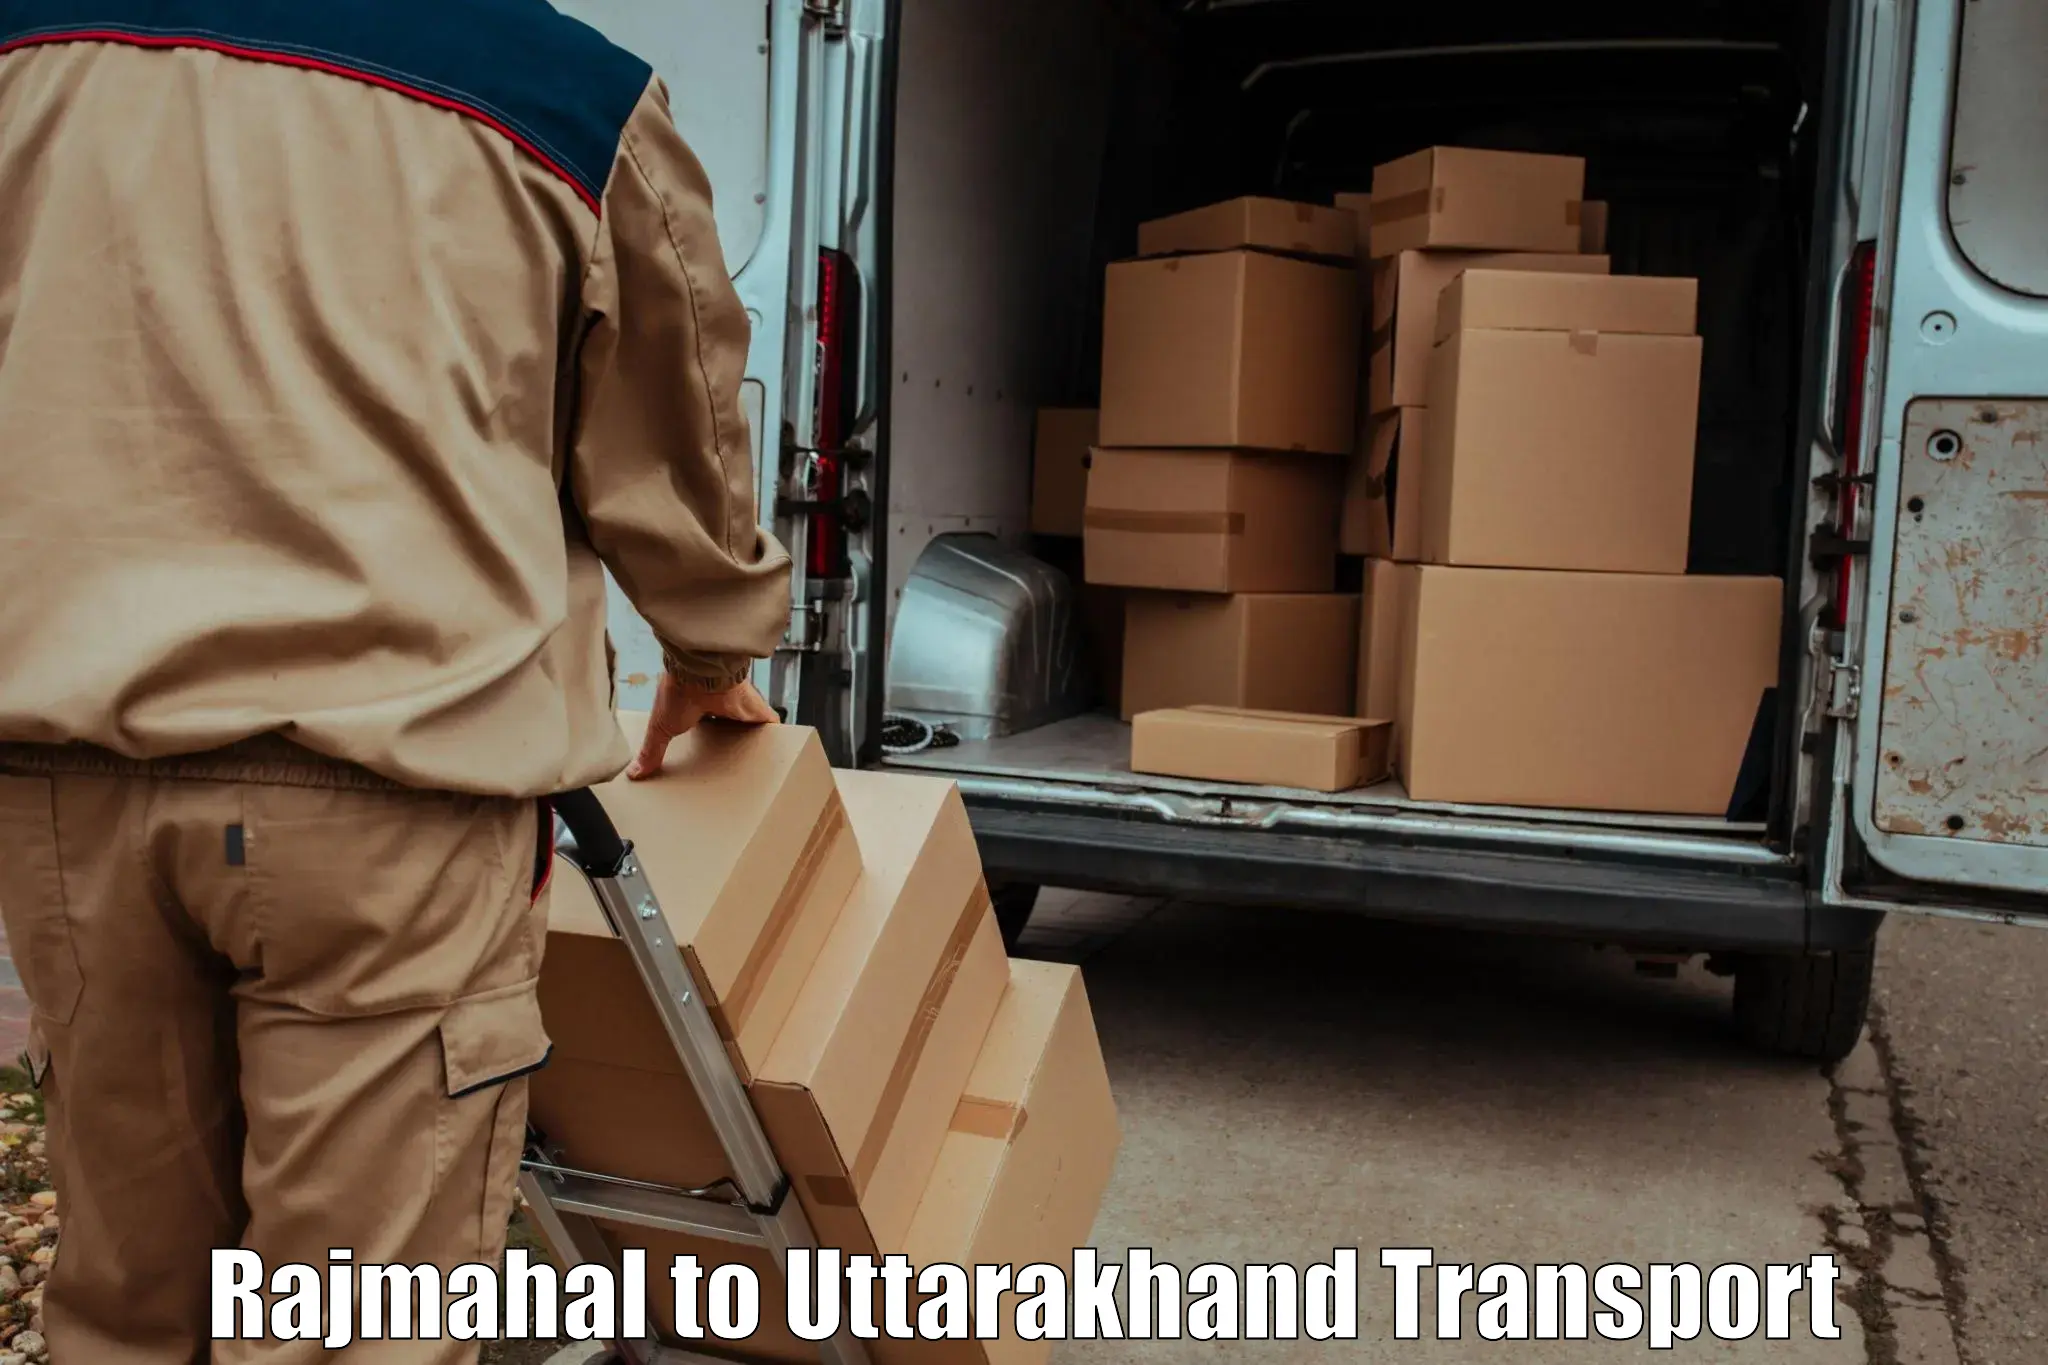 Parcel transport services Rajmahal to Rishikesh